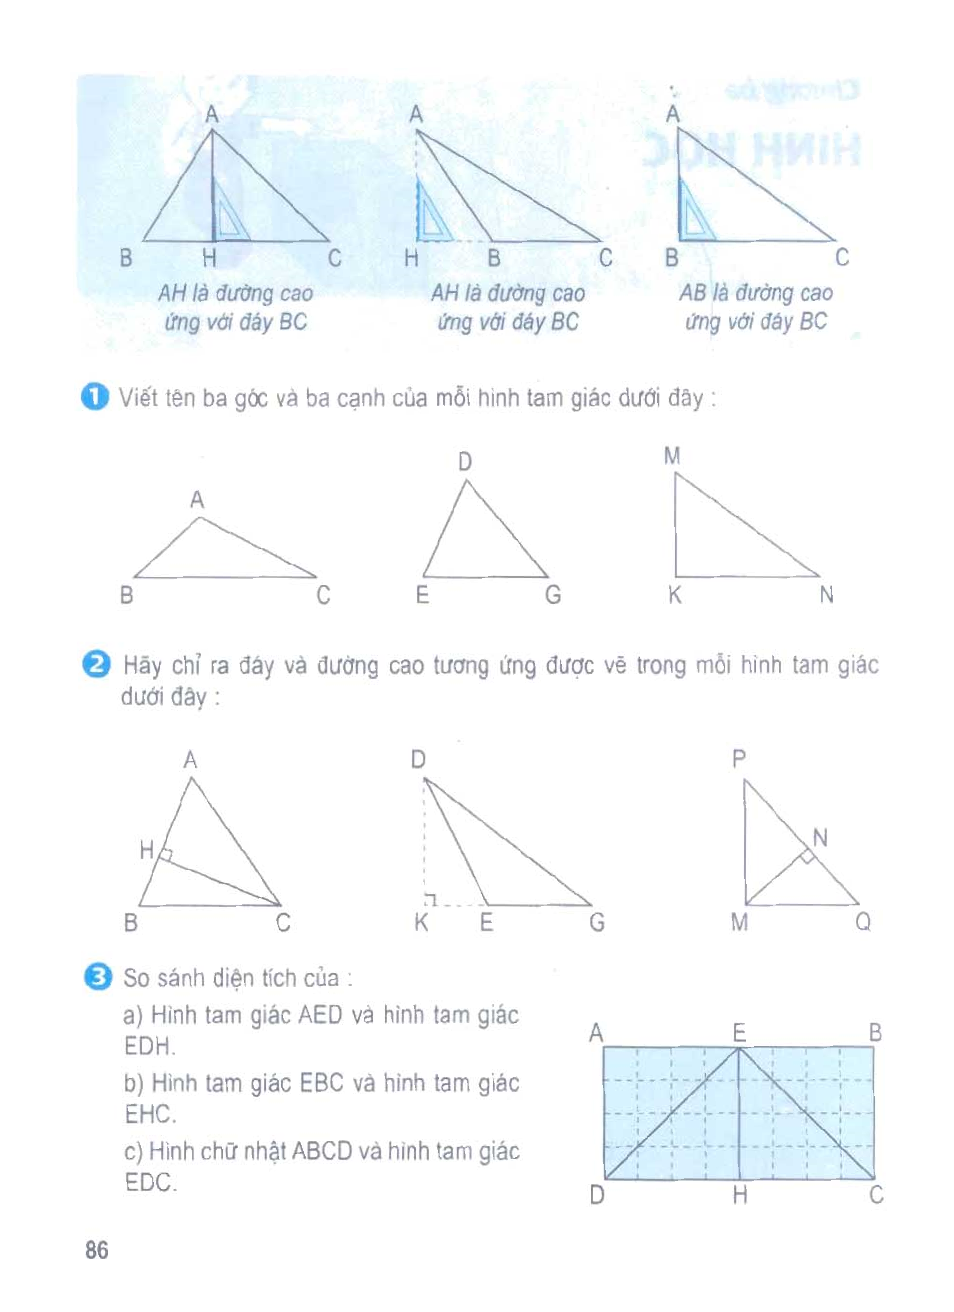 Giải bài hình tam giác  sgk Toán 5 trang 85  86  Tech12h